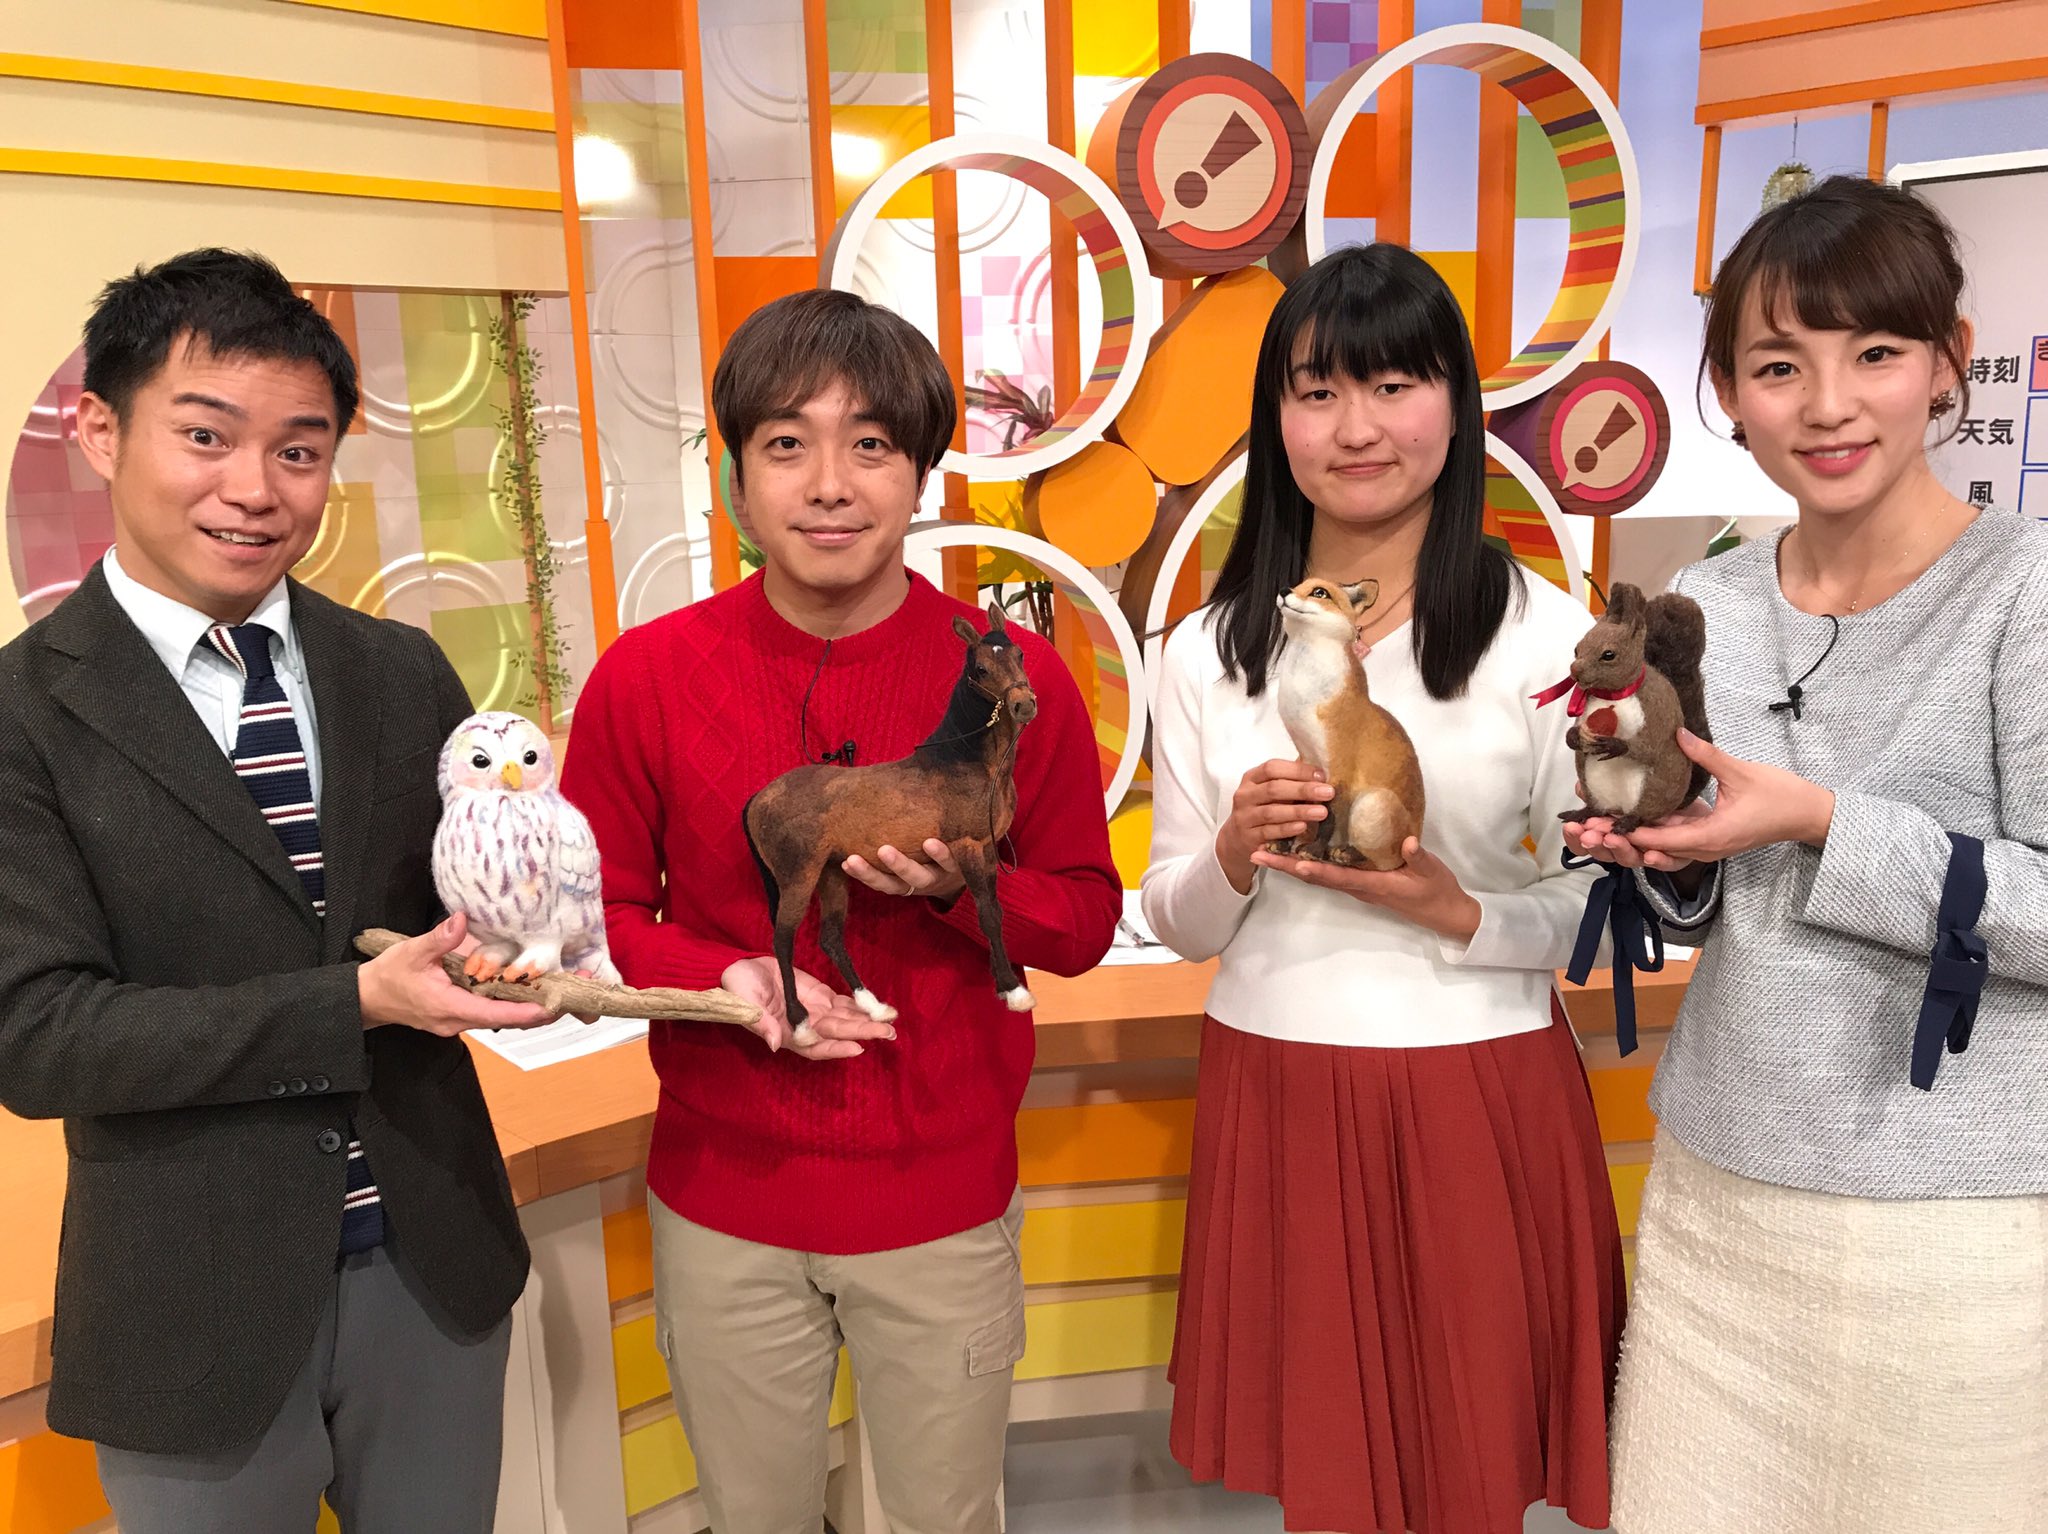 Ybs 山梨放送アナウンサー 公式 本日のてててtv 羊毛フェルト人形作家の荻原弘子さんと 荻原さんの可愛い動物作品たちが登場します